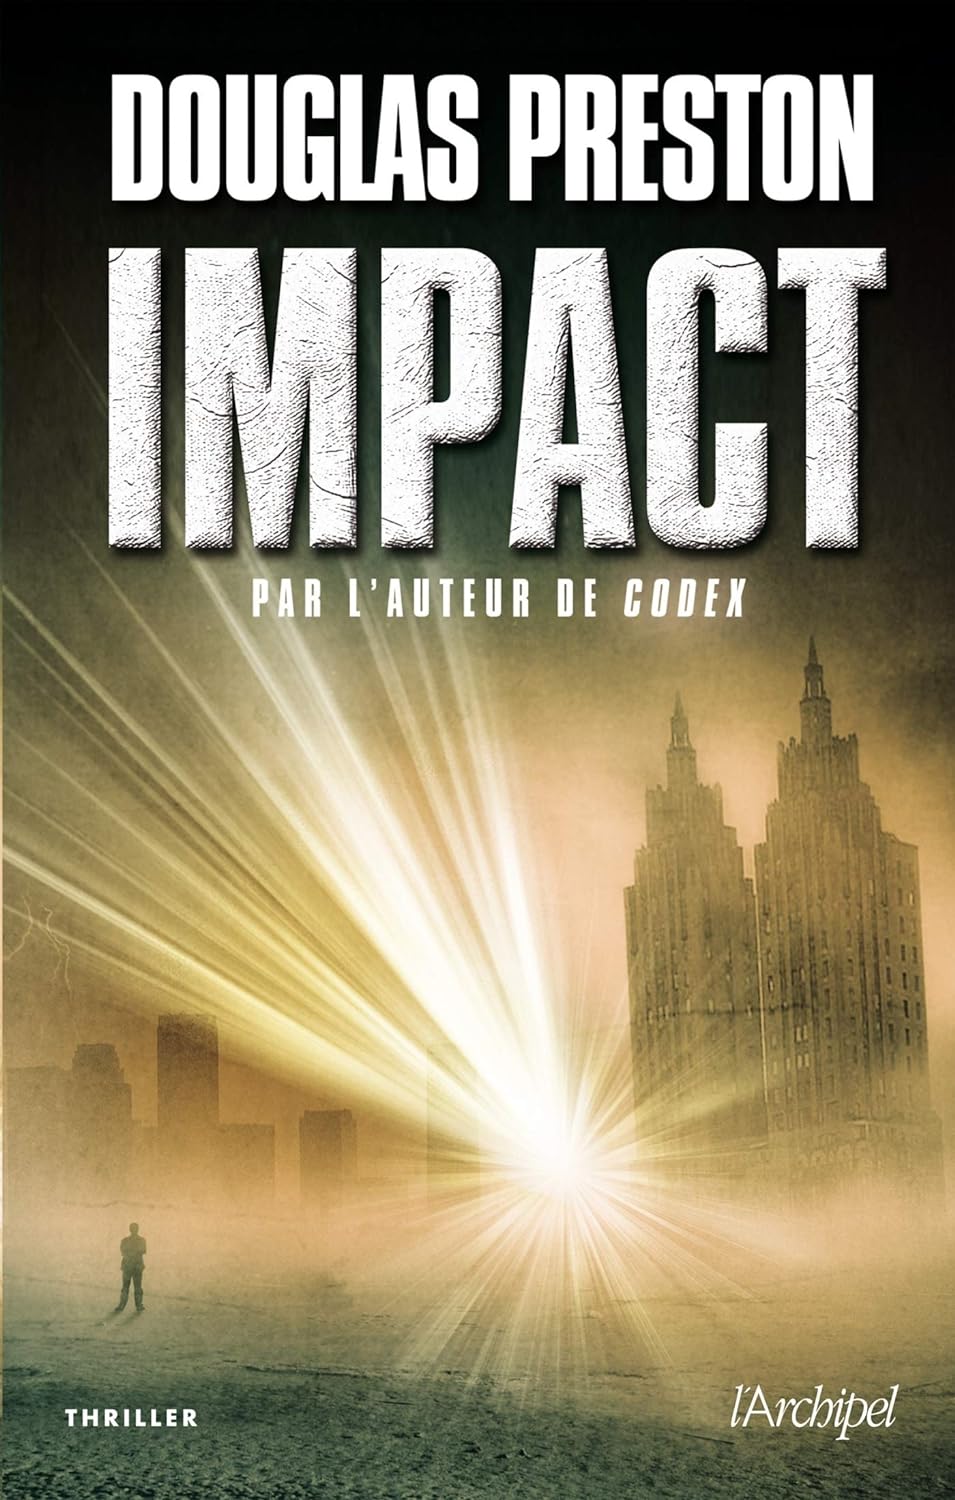 Impact - Douglas Preston